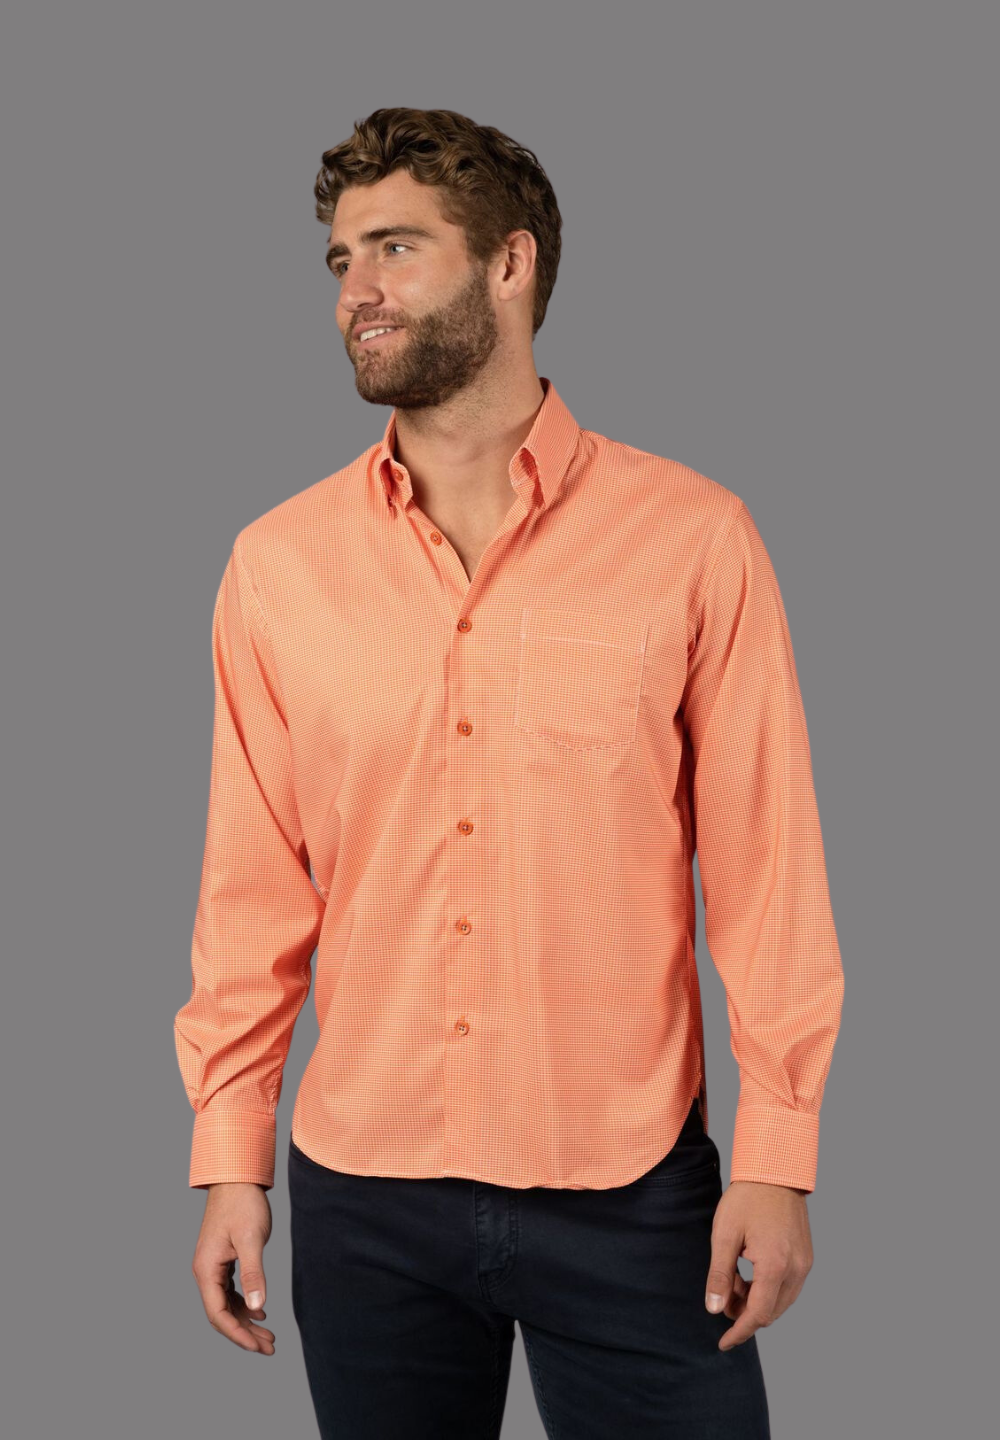 Orange and White Check Shirt